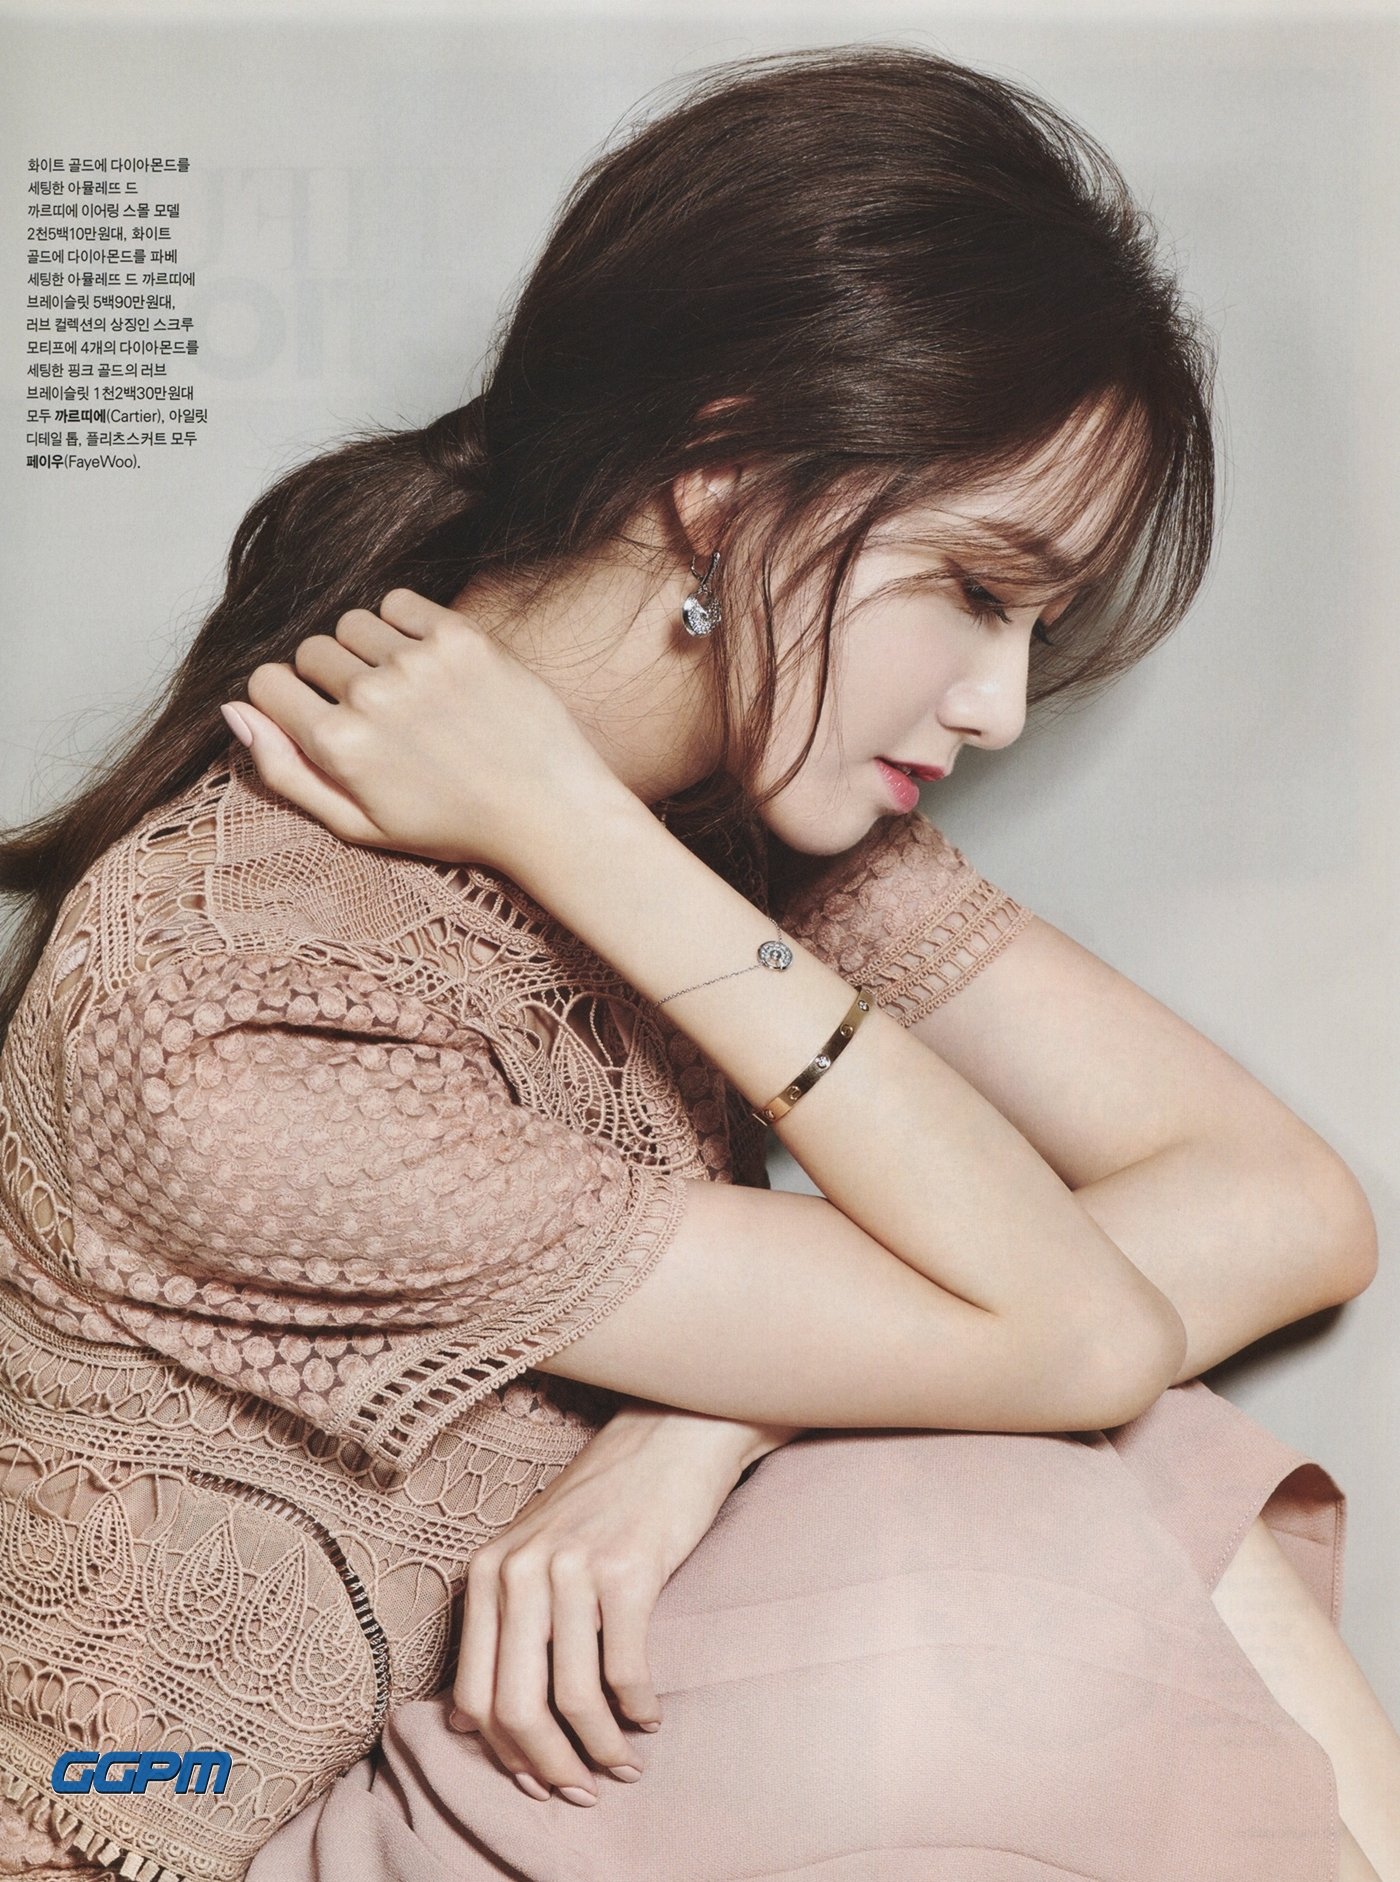 [PIC][21-10-2015]YoonA xuất hiện trên ấn phẩm tháng 11 của tạp chí "Marie Claire" 7P8FcW4cJ9-3000x3000